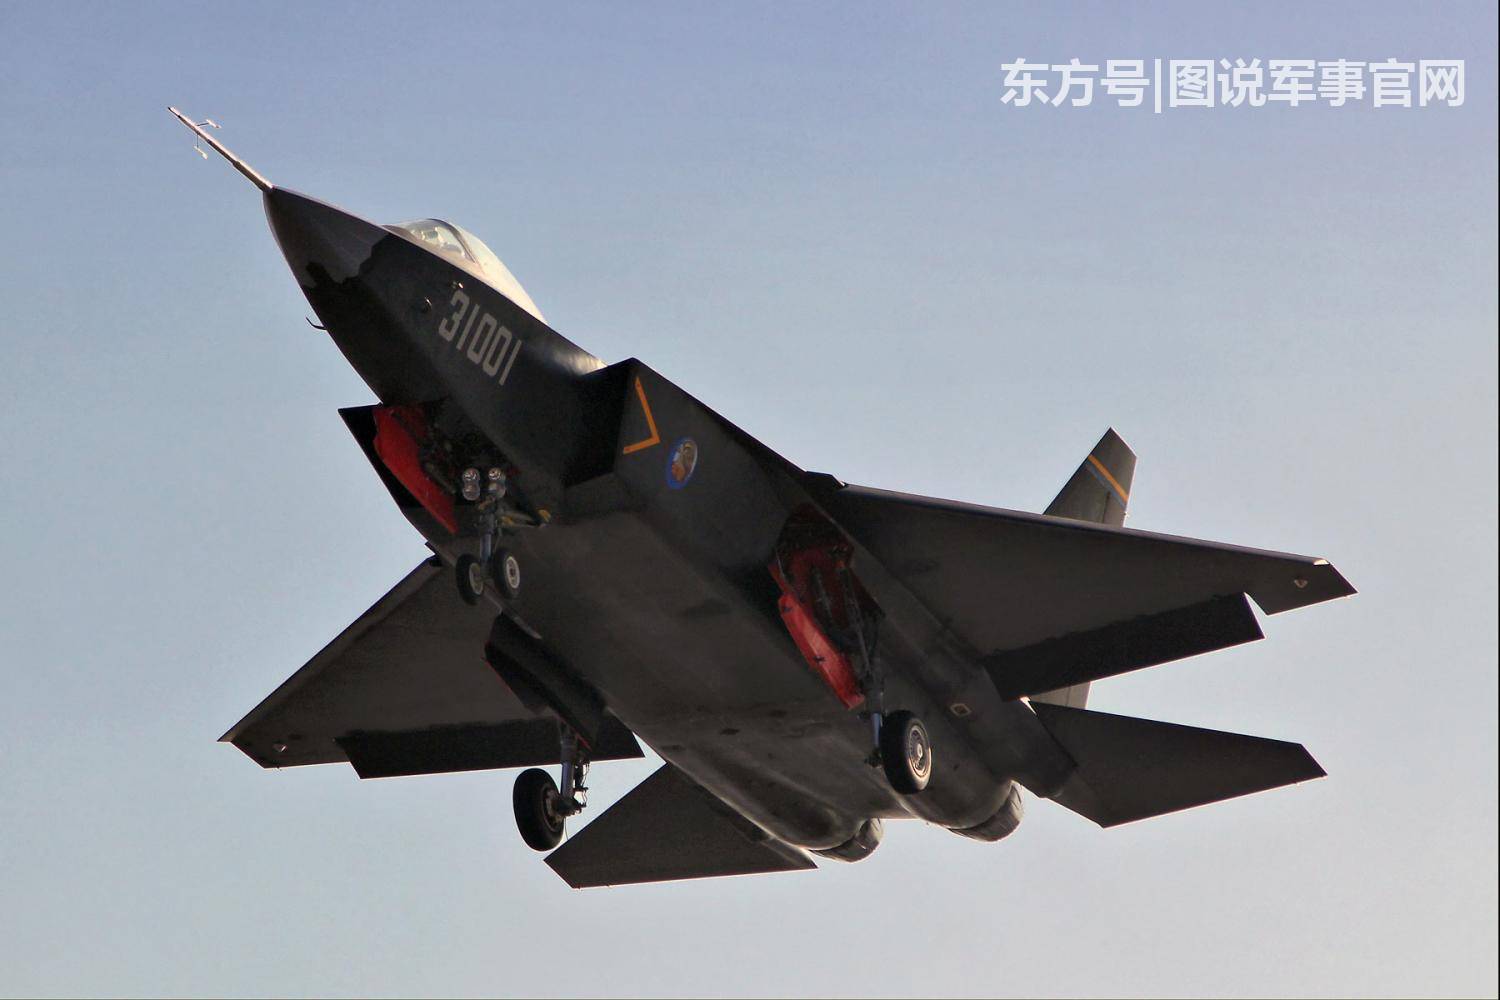 中国空军正在飞速发展,世界各国的空军实力或